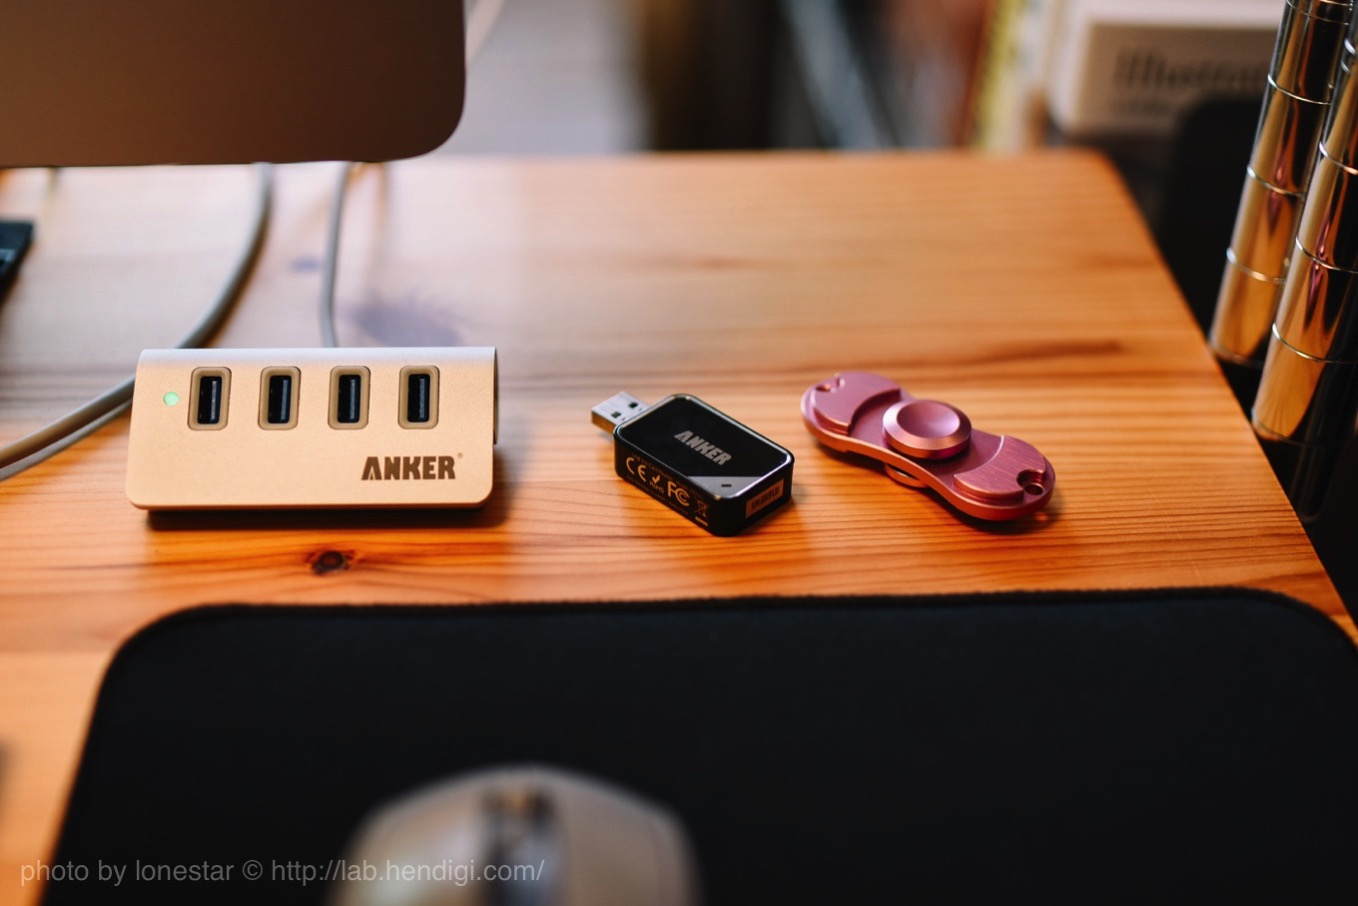 Anker USB 3.0 高速4ポートハブ